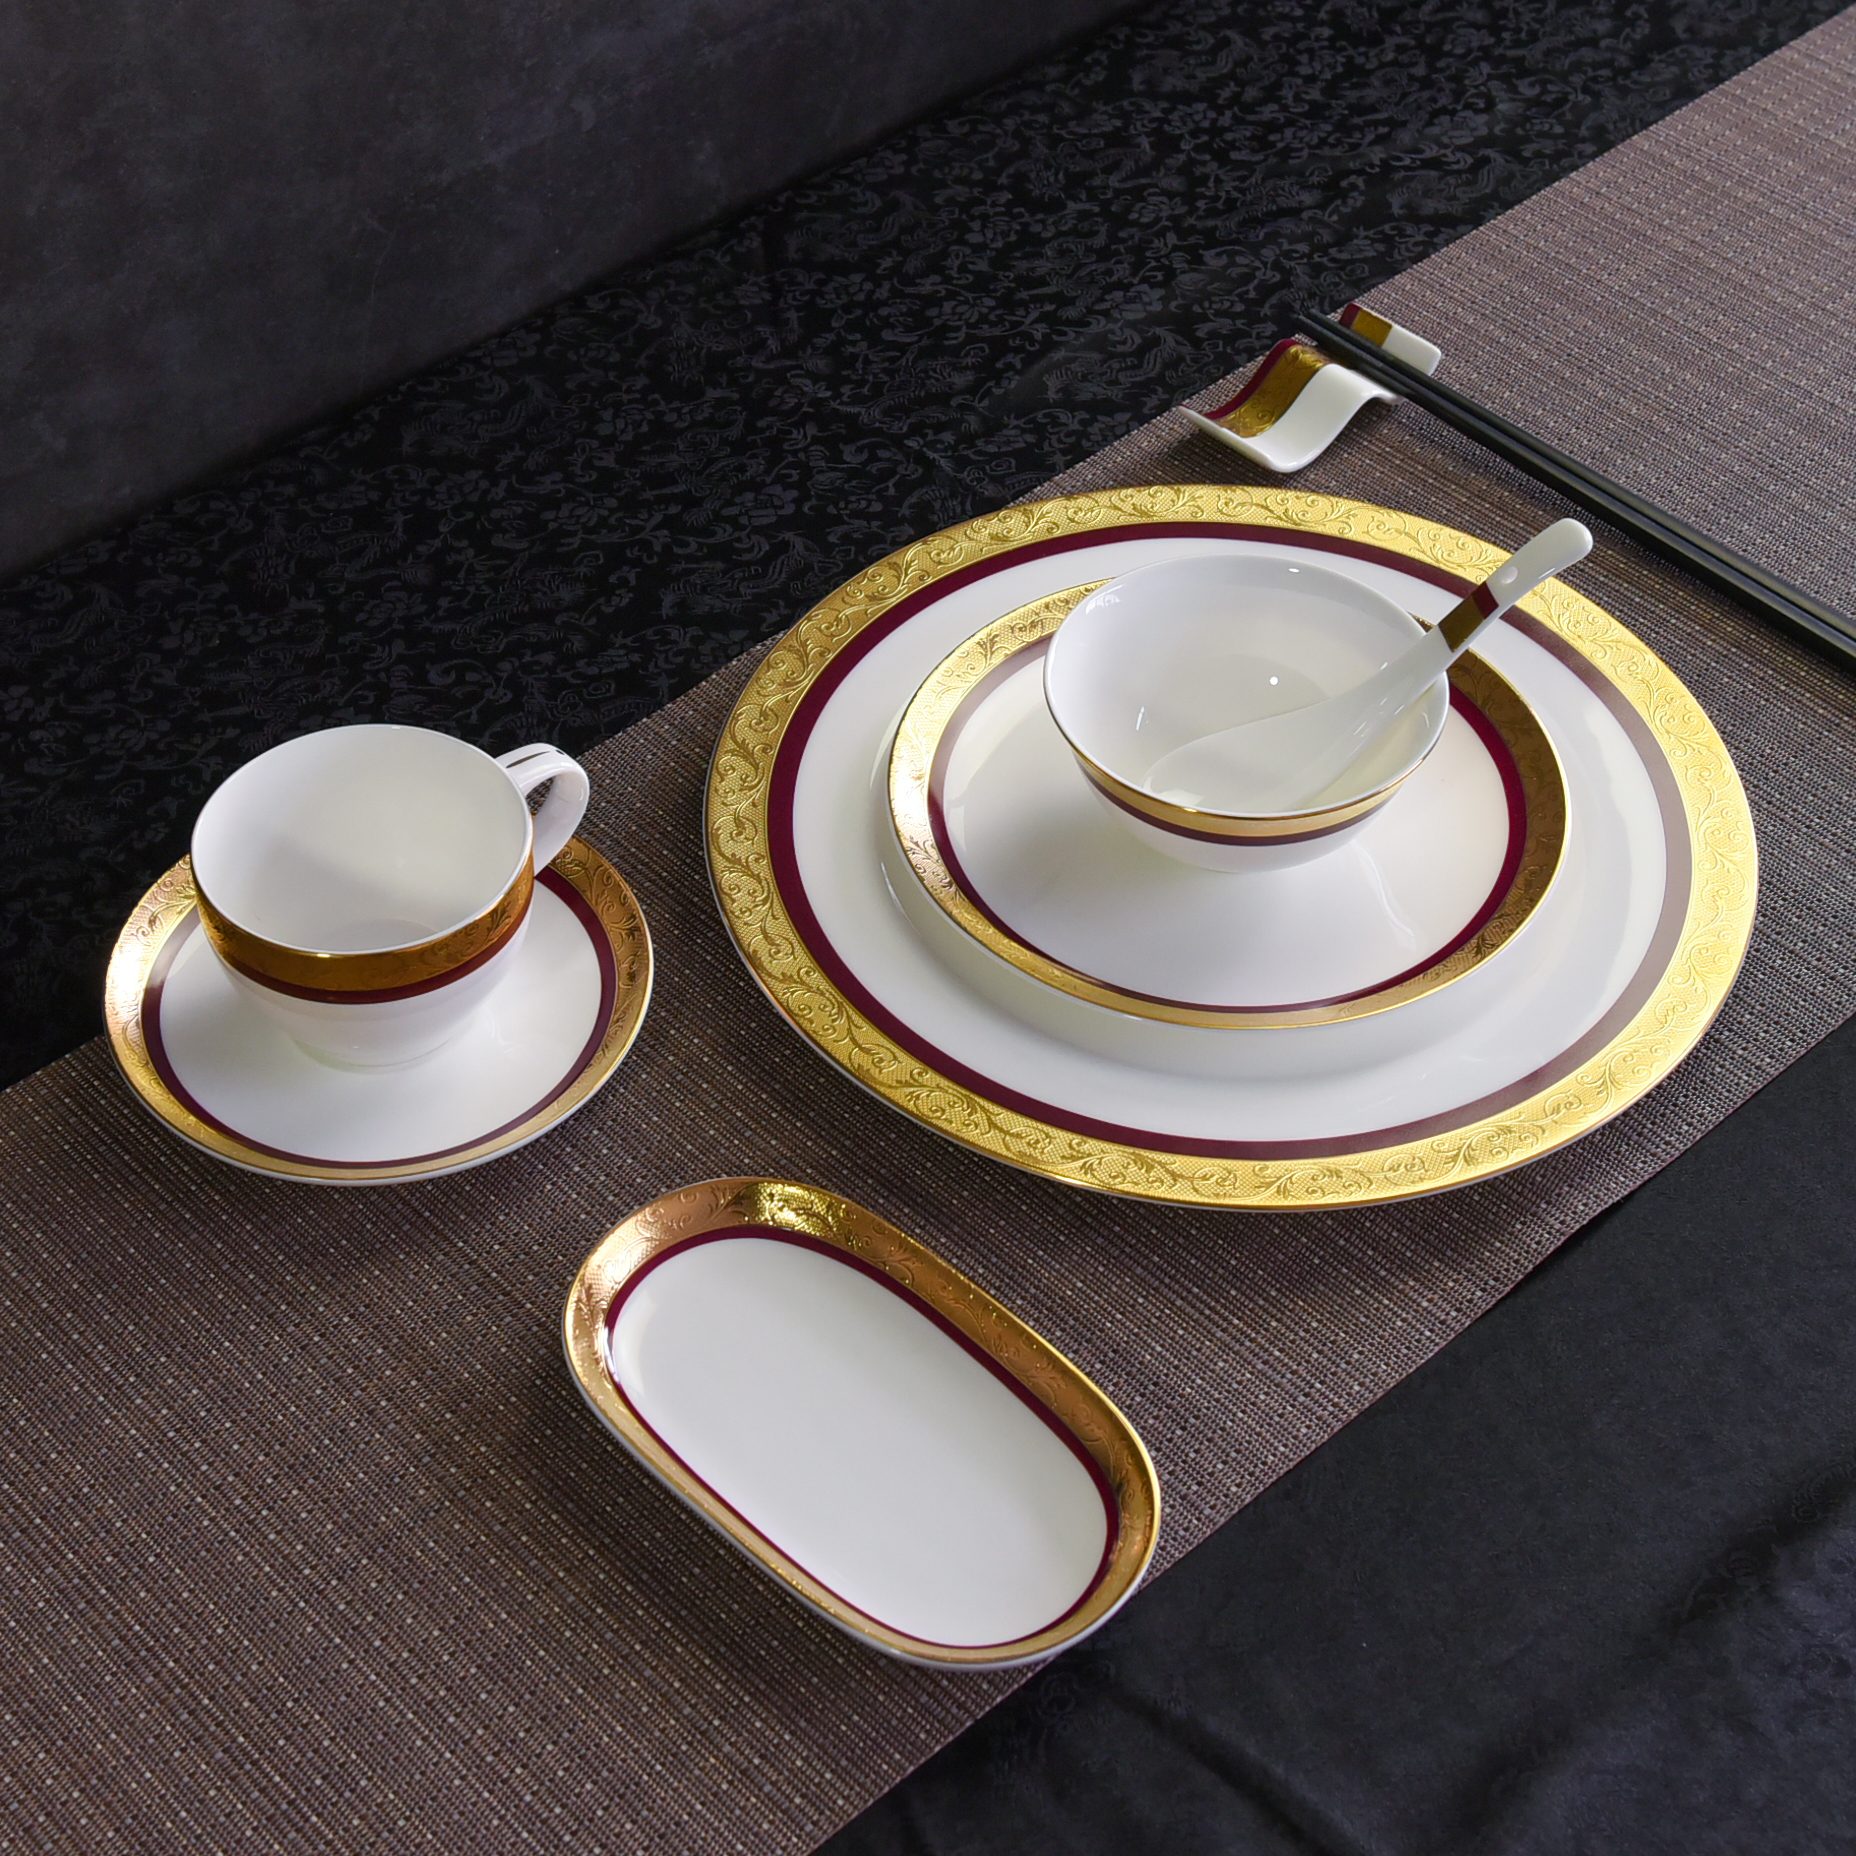 唯奥陶瓷批发唐山骨瓷碗盘碟勺套装定制中西式餐厅全套浮雕金餐具